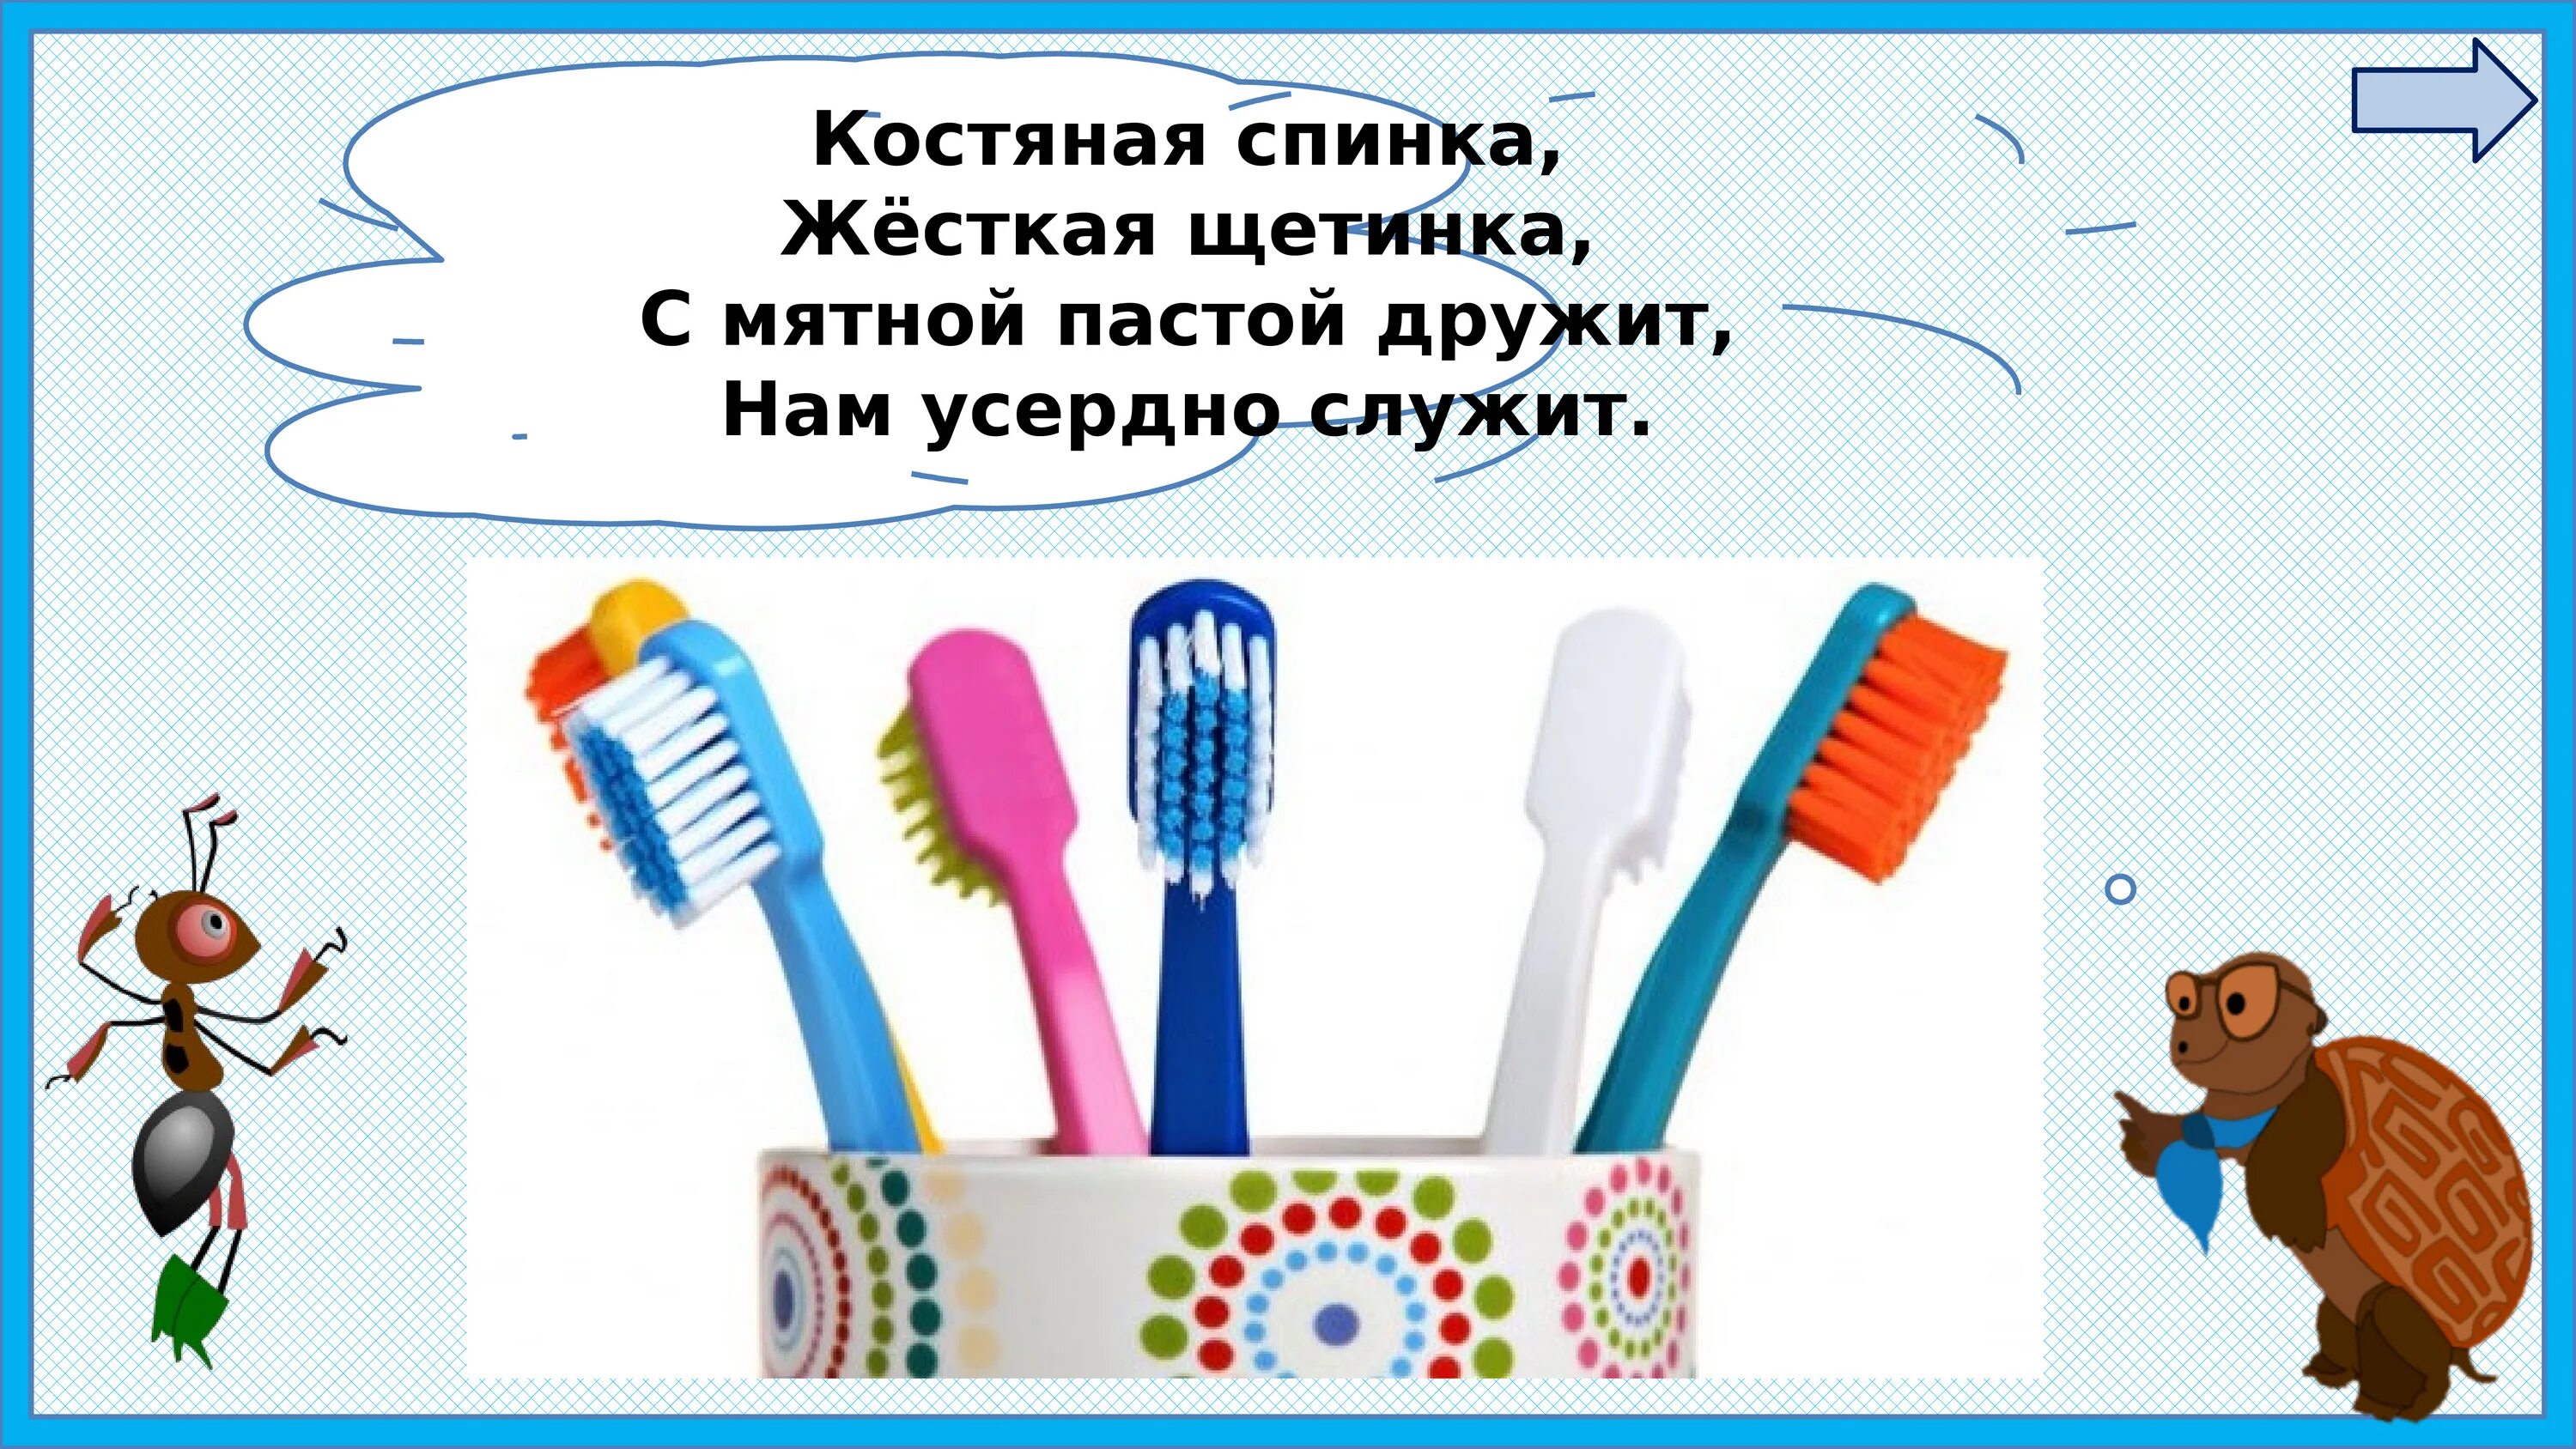 Окружающий мир 1 класс мыть руки. Почему нужно чистить зубы и мыть руки. Почему нужно чистить зубы и мыть руки 1 класс окружающий мир. Окружающий мир почему нужно чистить зубы и мыть руки. Зачем 1 класс нужно чистить зубы.